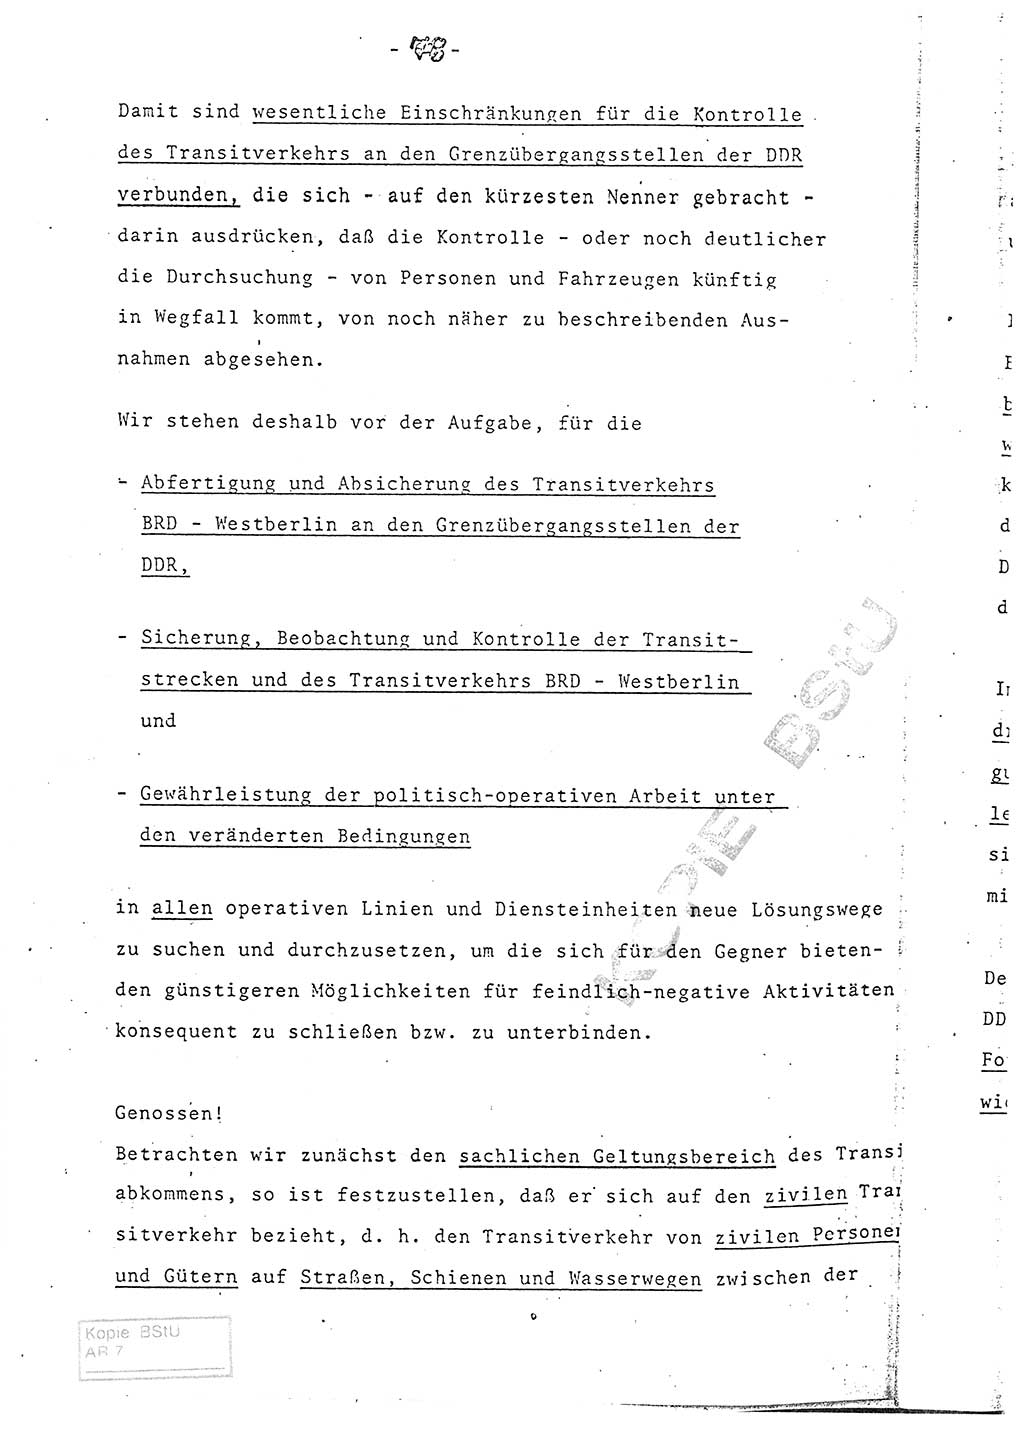 Referat (Entwurf) des Genossen Minister (Generaloberst Erich Mielke) auf der Dienstkonferenz 1972, Ministerium für Staatssicherheit (MfS) [Deutsche Demokratische Republik (DDR)], Der Minister, Geheime Verschlußsache (GVS) 008-150/72, Berlin 25.2.1972, Seite 78 (Ref. Entw. DK MfS DDR Min. GVS 008-150/72 1972, S. 78)